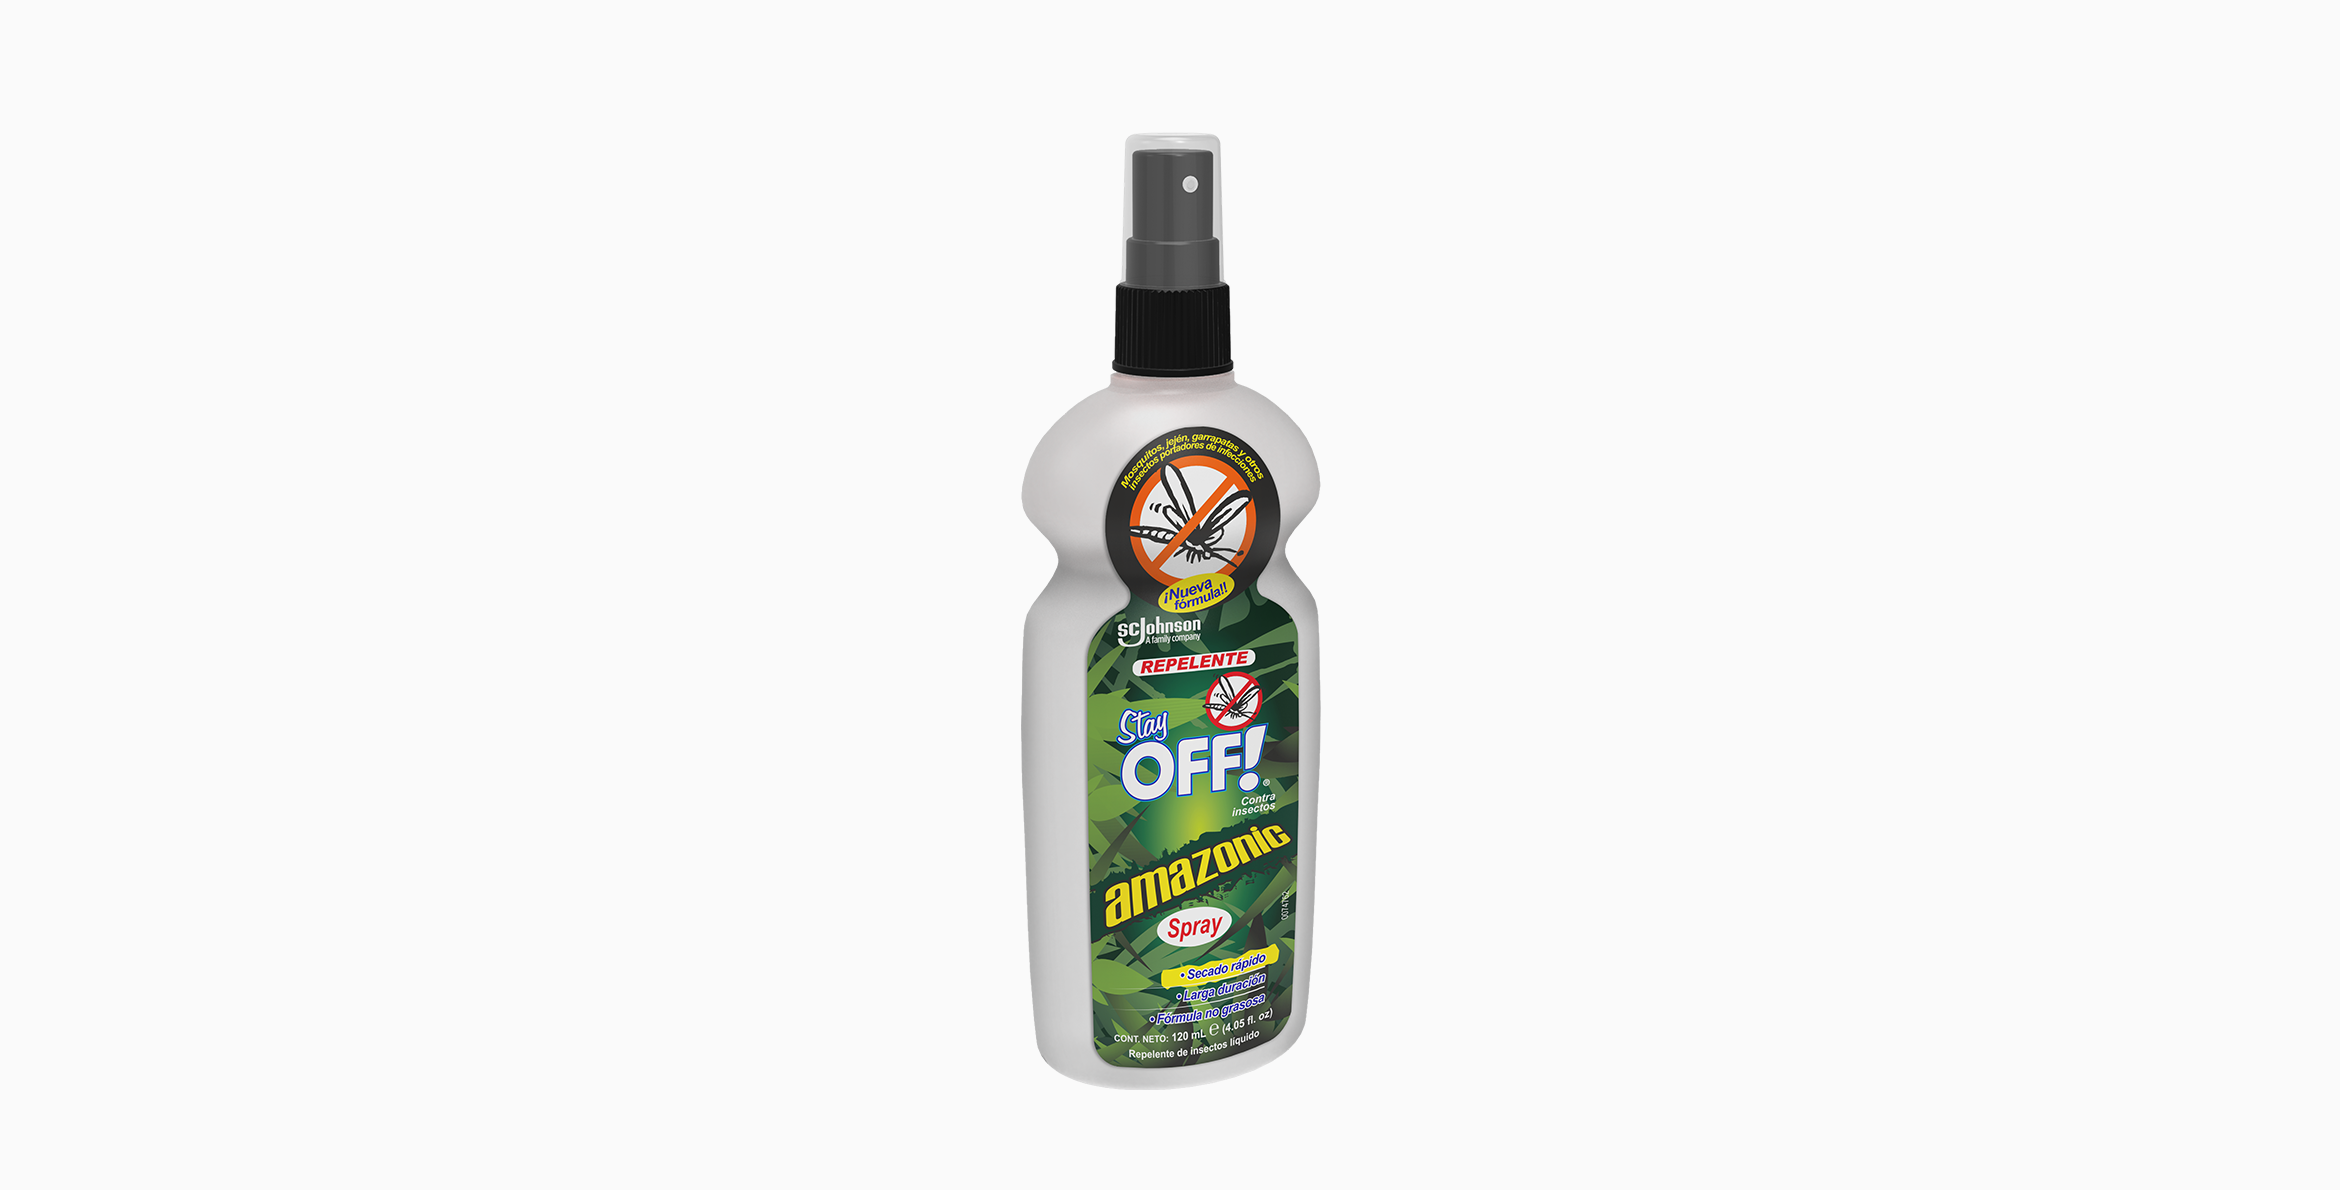 Stay OFF!® Amazonic Repelente de insectos con atomizador 120 mL